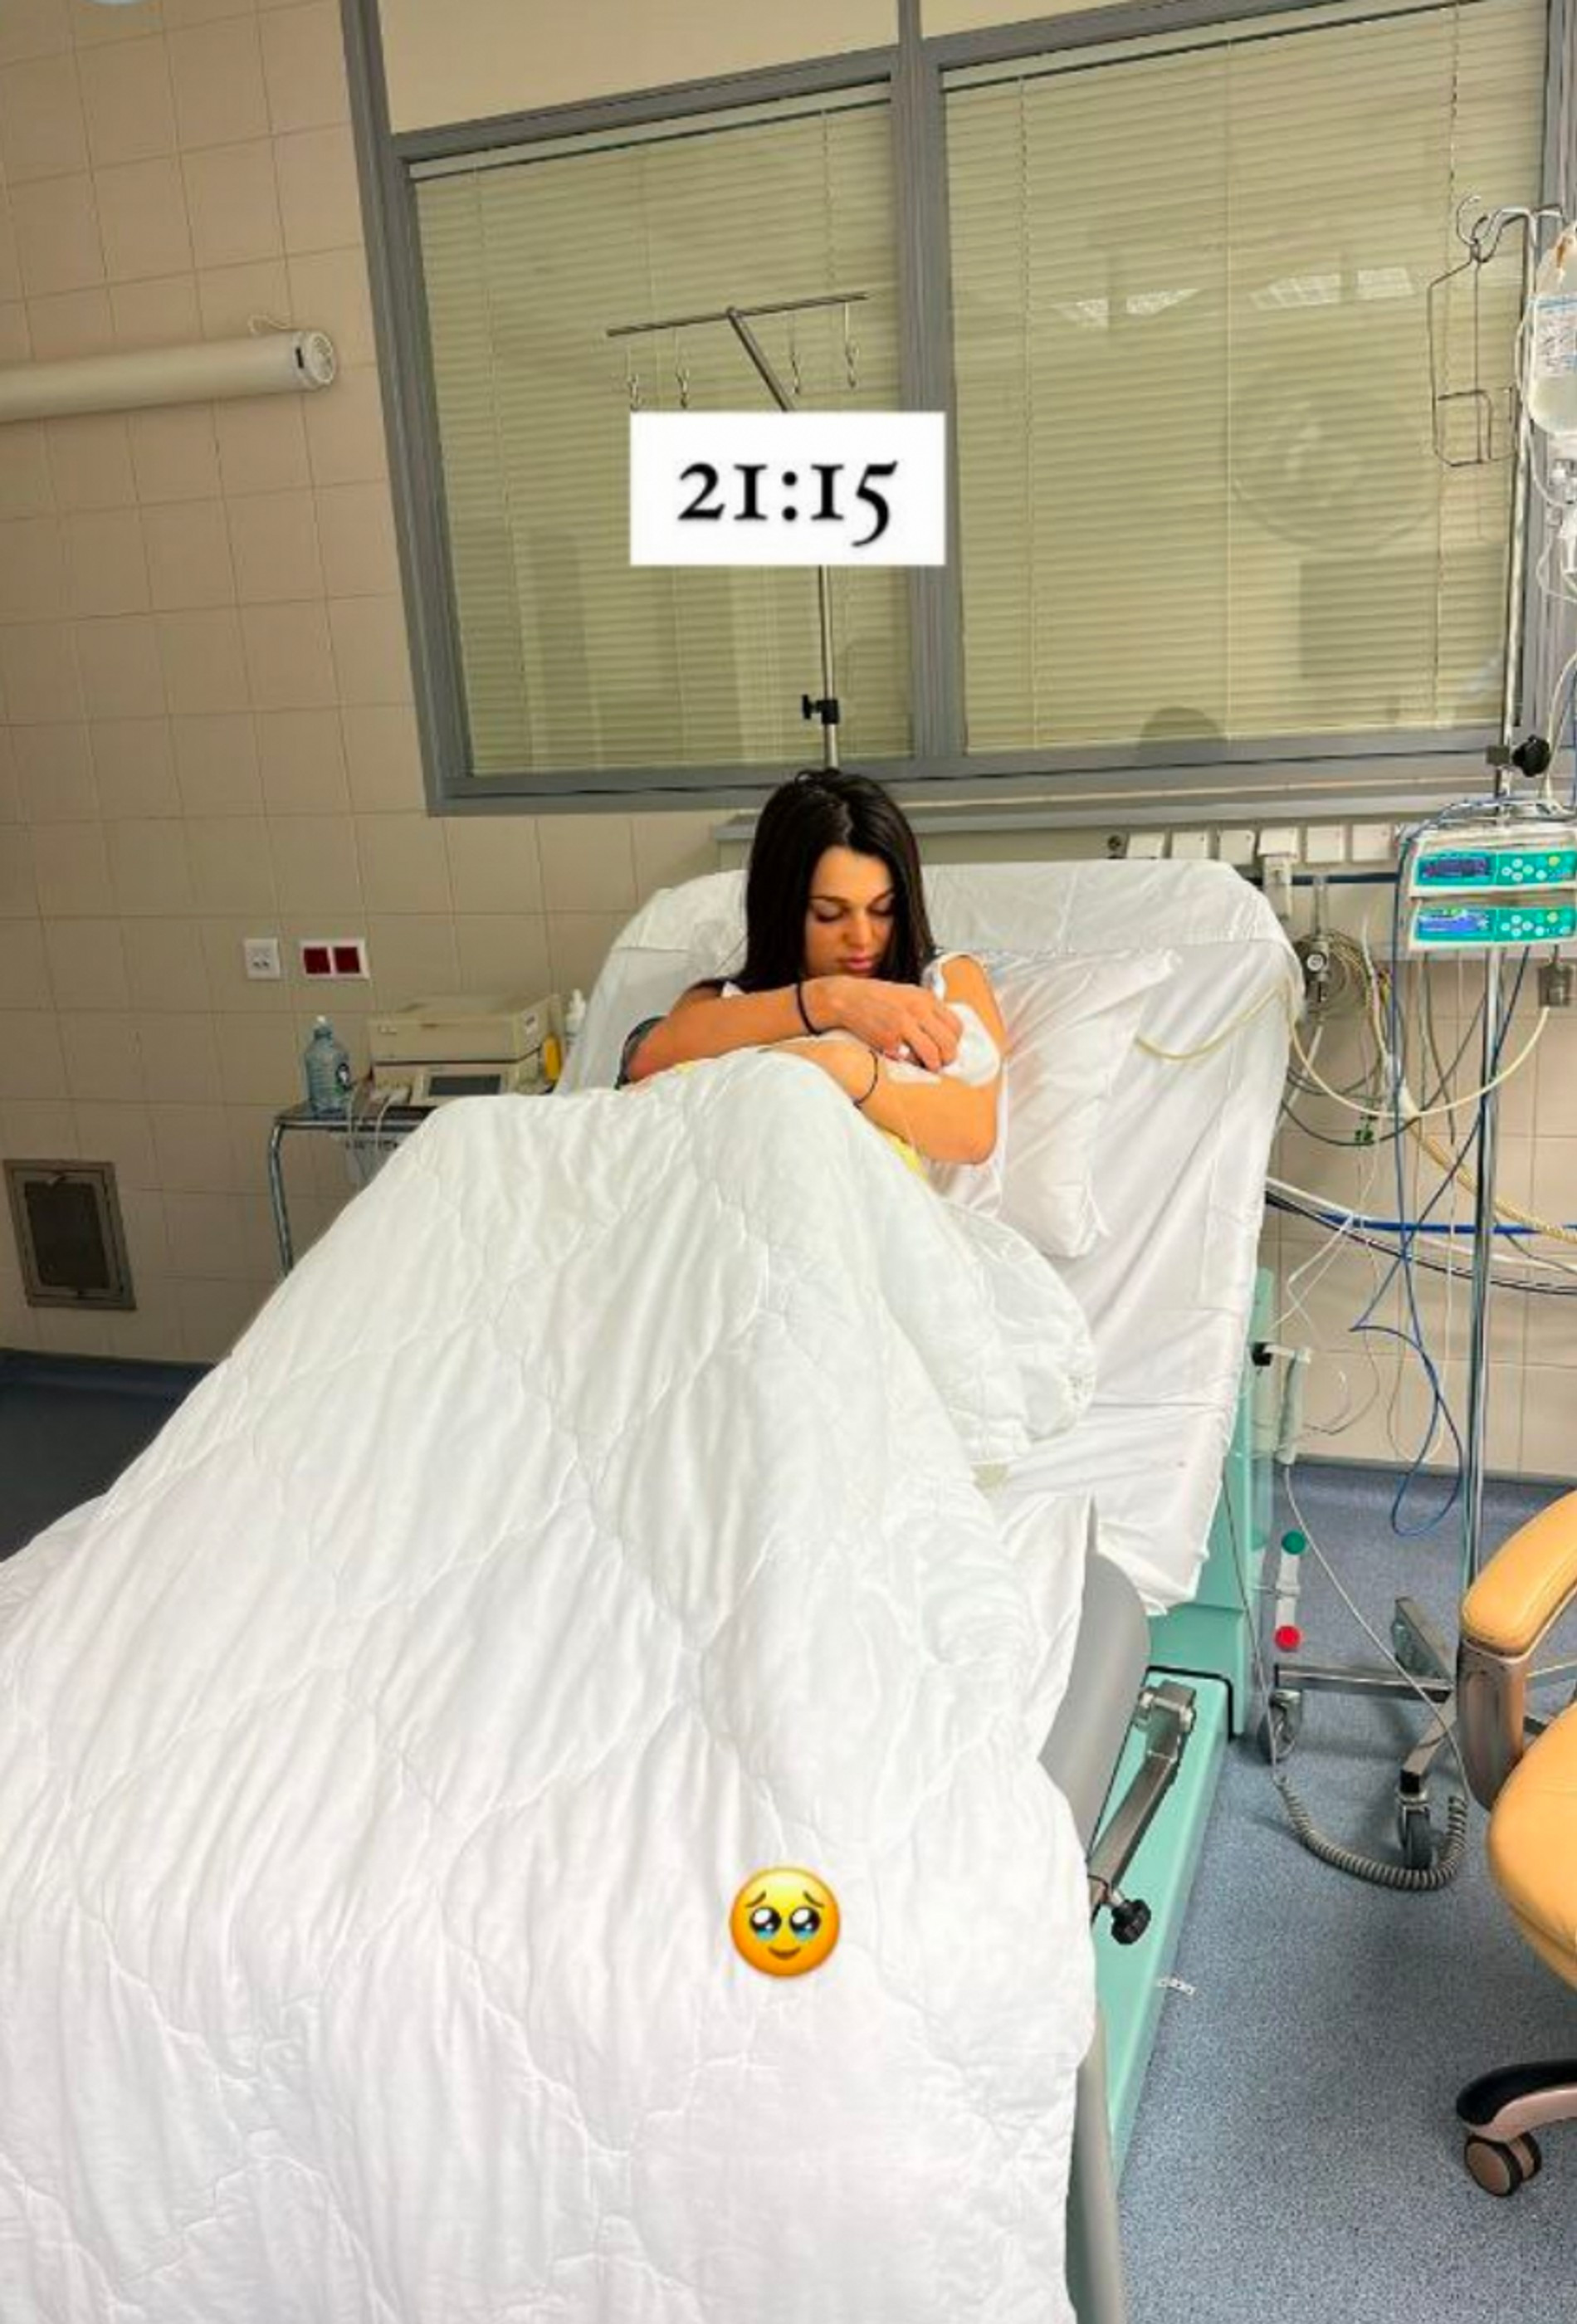 Новоиспеченная мама и новорожденный в роддоме
Фото: Инстаграм (запрещен в РФ) Леши Свика